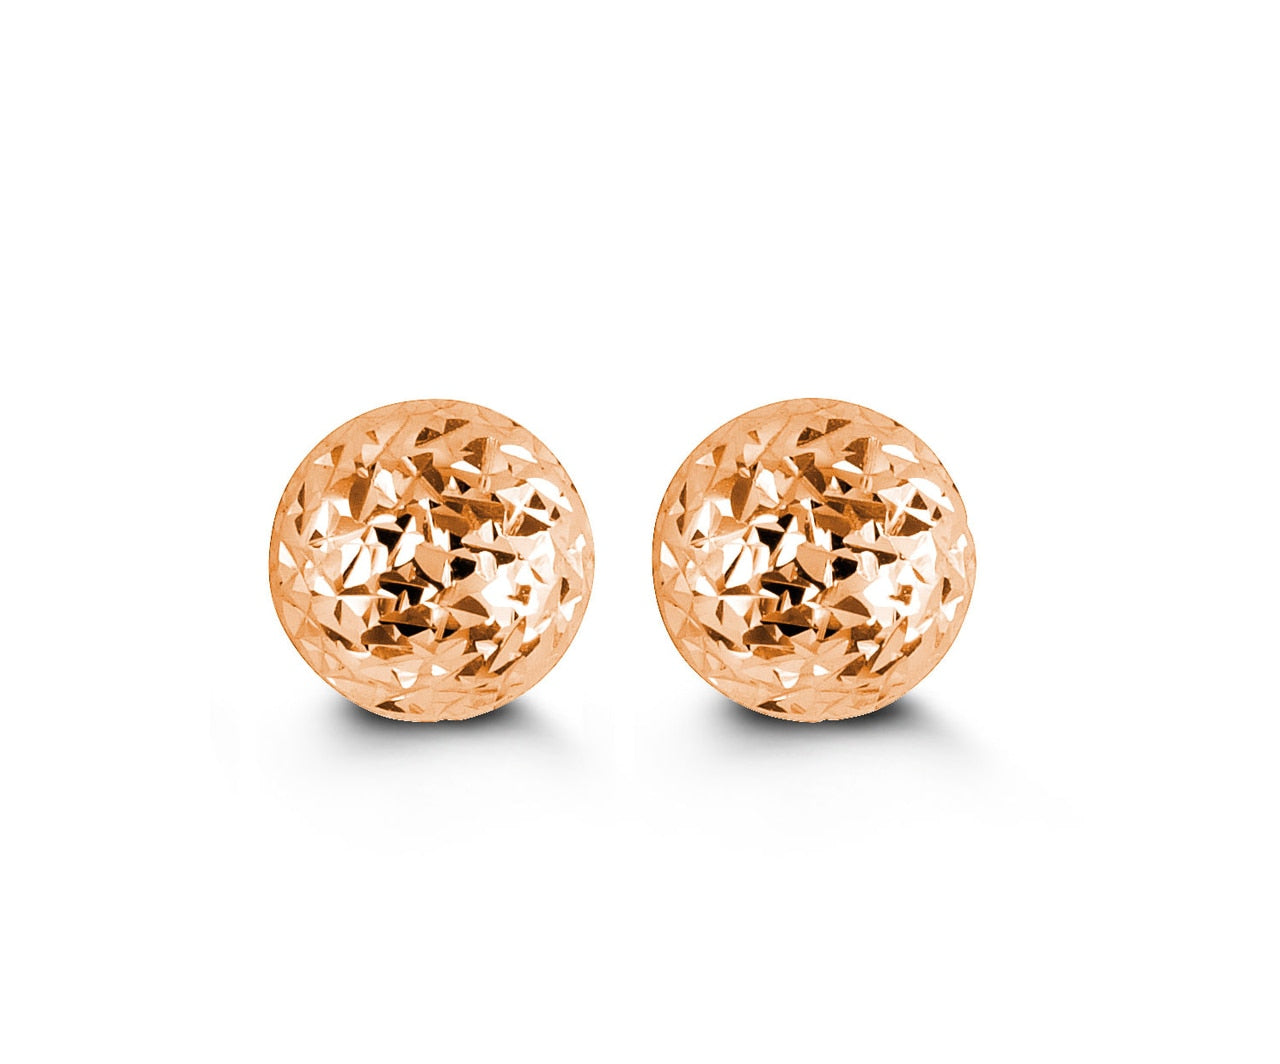 10KT Rose Gold Textured Ball Style Earrings 10mm Diameter